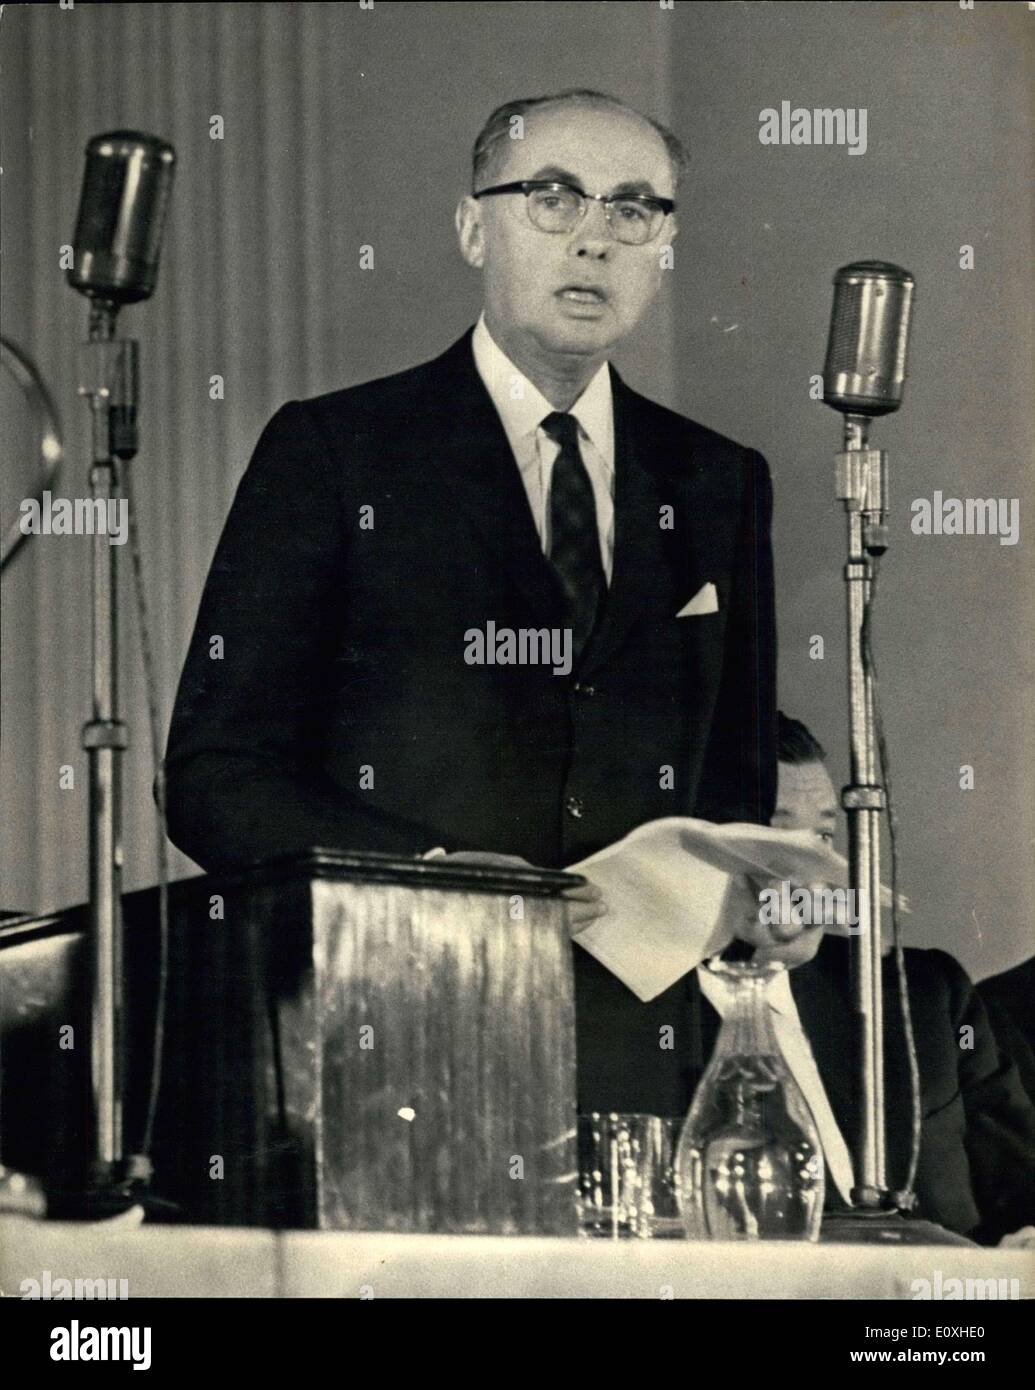 19 octobre 1966 - CÉRÉMONIE COMMÉMORATIVE DE L'UNESCO. Une cérémonie commémorative marquant le 20e anniversaire de la fondation de l'UNESCO (Organisation des Nations Unies pour l'éducation la science et la culture), a eu lieu aujourd'hui à Banqueting House, Whitehall, Londres. 30 membres du Conseil exécutif de l'UNESCO et les principaux membres de son secrétariat ont été présents. Le premier ministre, M. Harold Wilson a été l'orateur principal. Photo : M. René Maheu, directeur général de l'UNESCO, aujourd'hui la parole. Banque D'Images